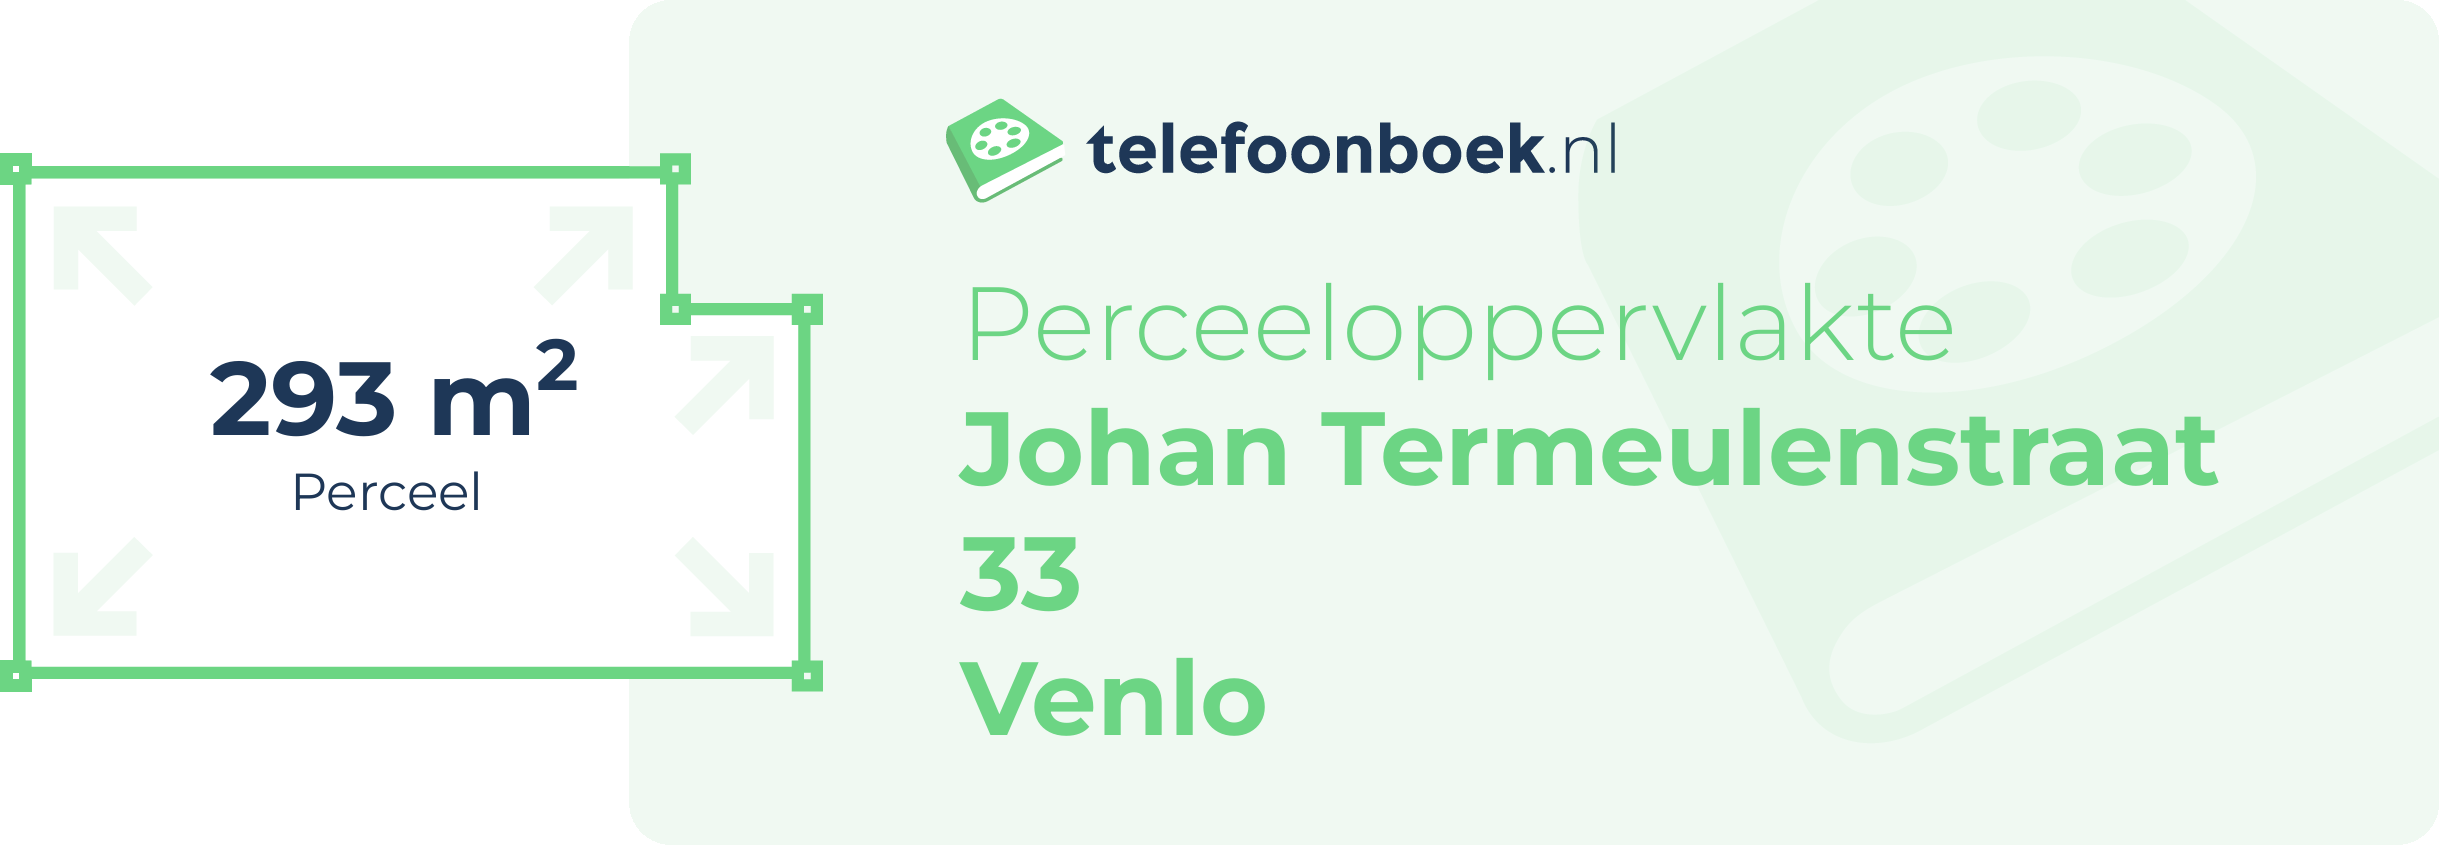 Perceeloppervlakte Johan Termeulenstraat 33 Venlo